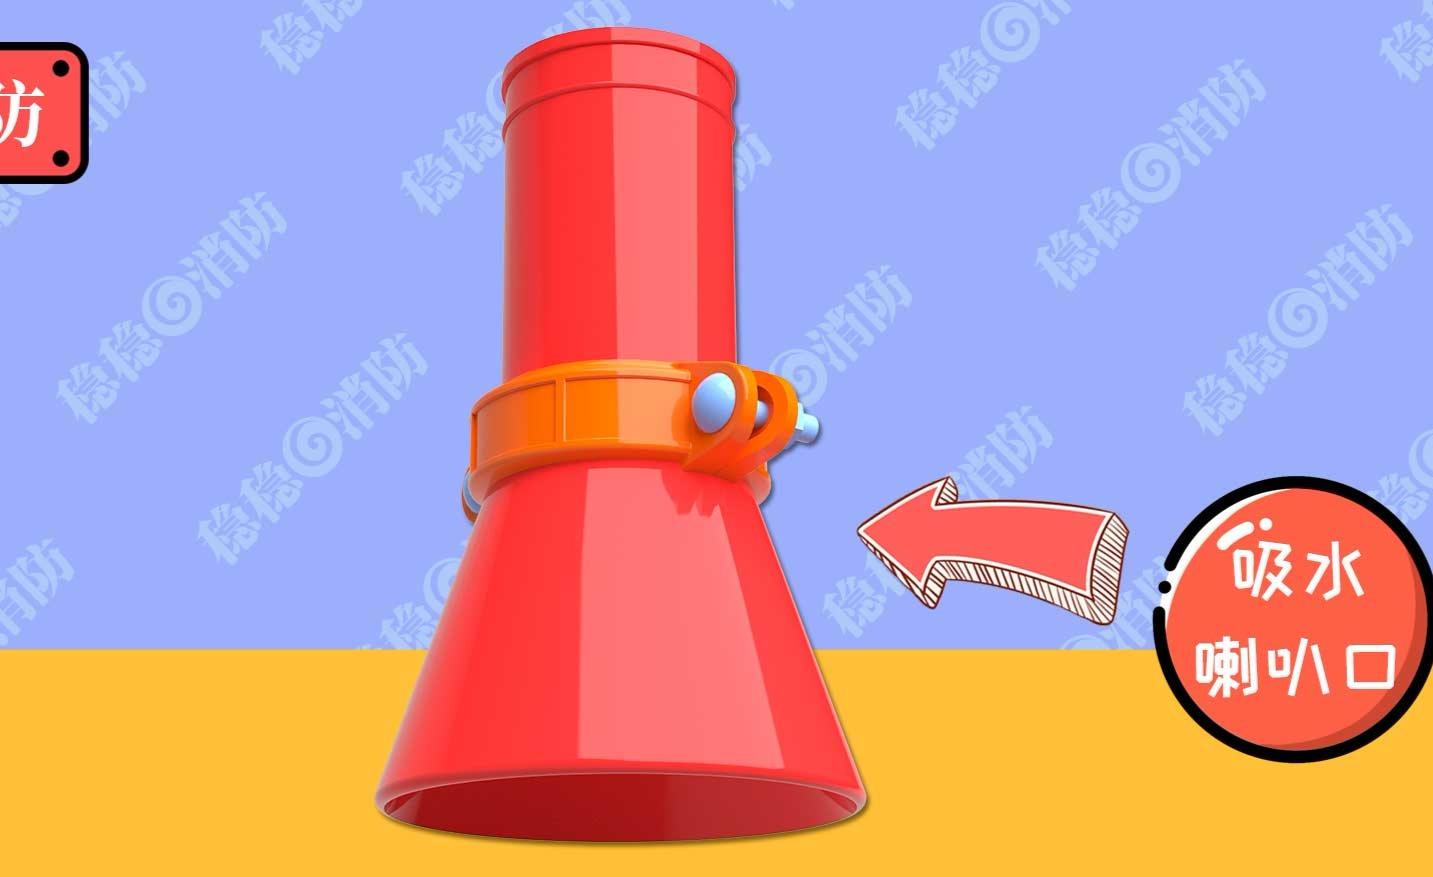 【3d模型】稳稳消防工程师消防水泵吸水管喇叭口动画讲解